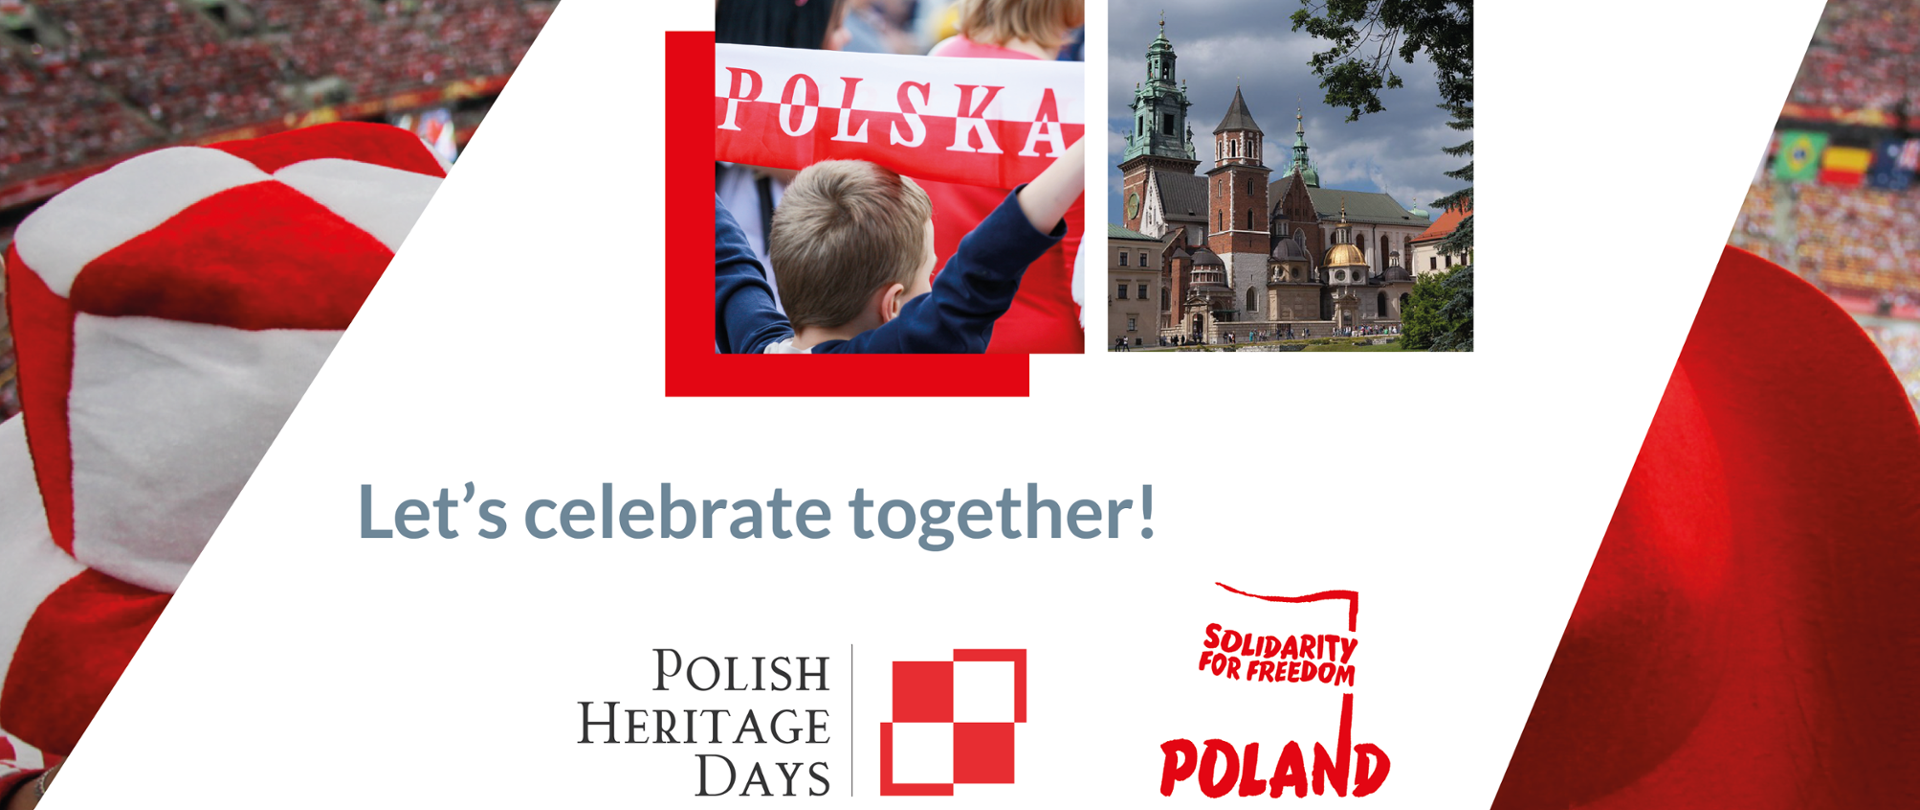 Plakat promujący Dni Polskiego Dziedzictwa 